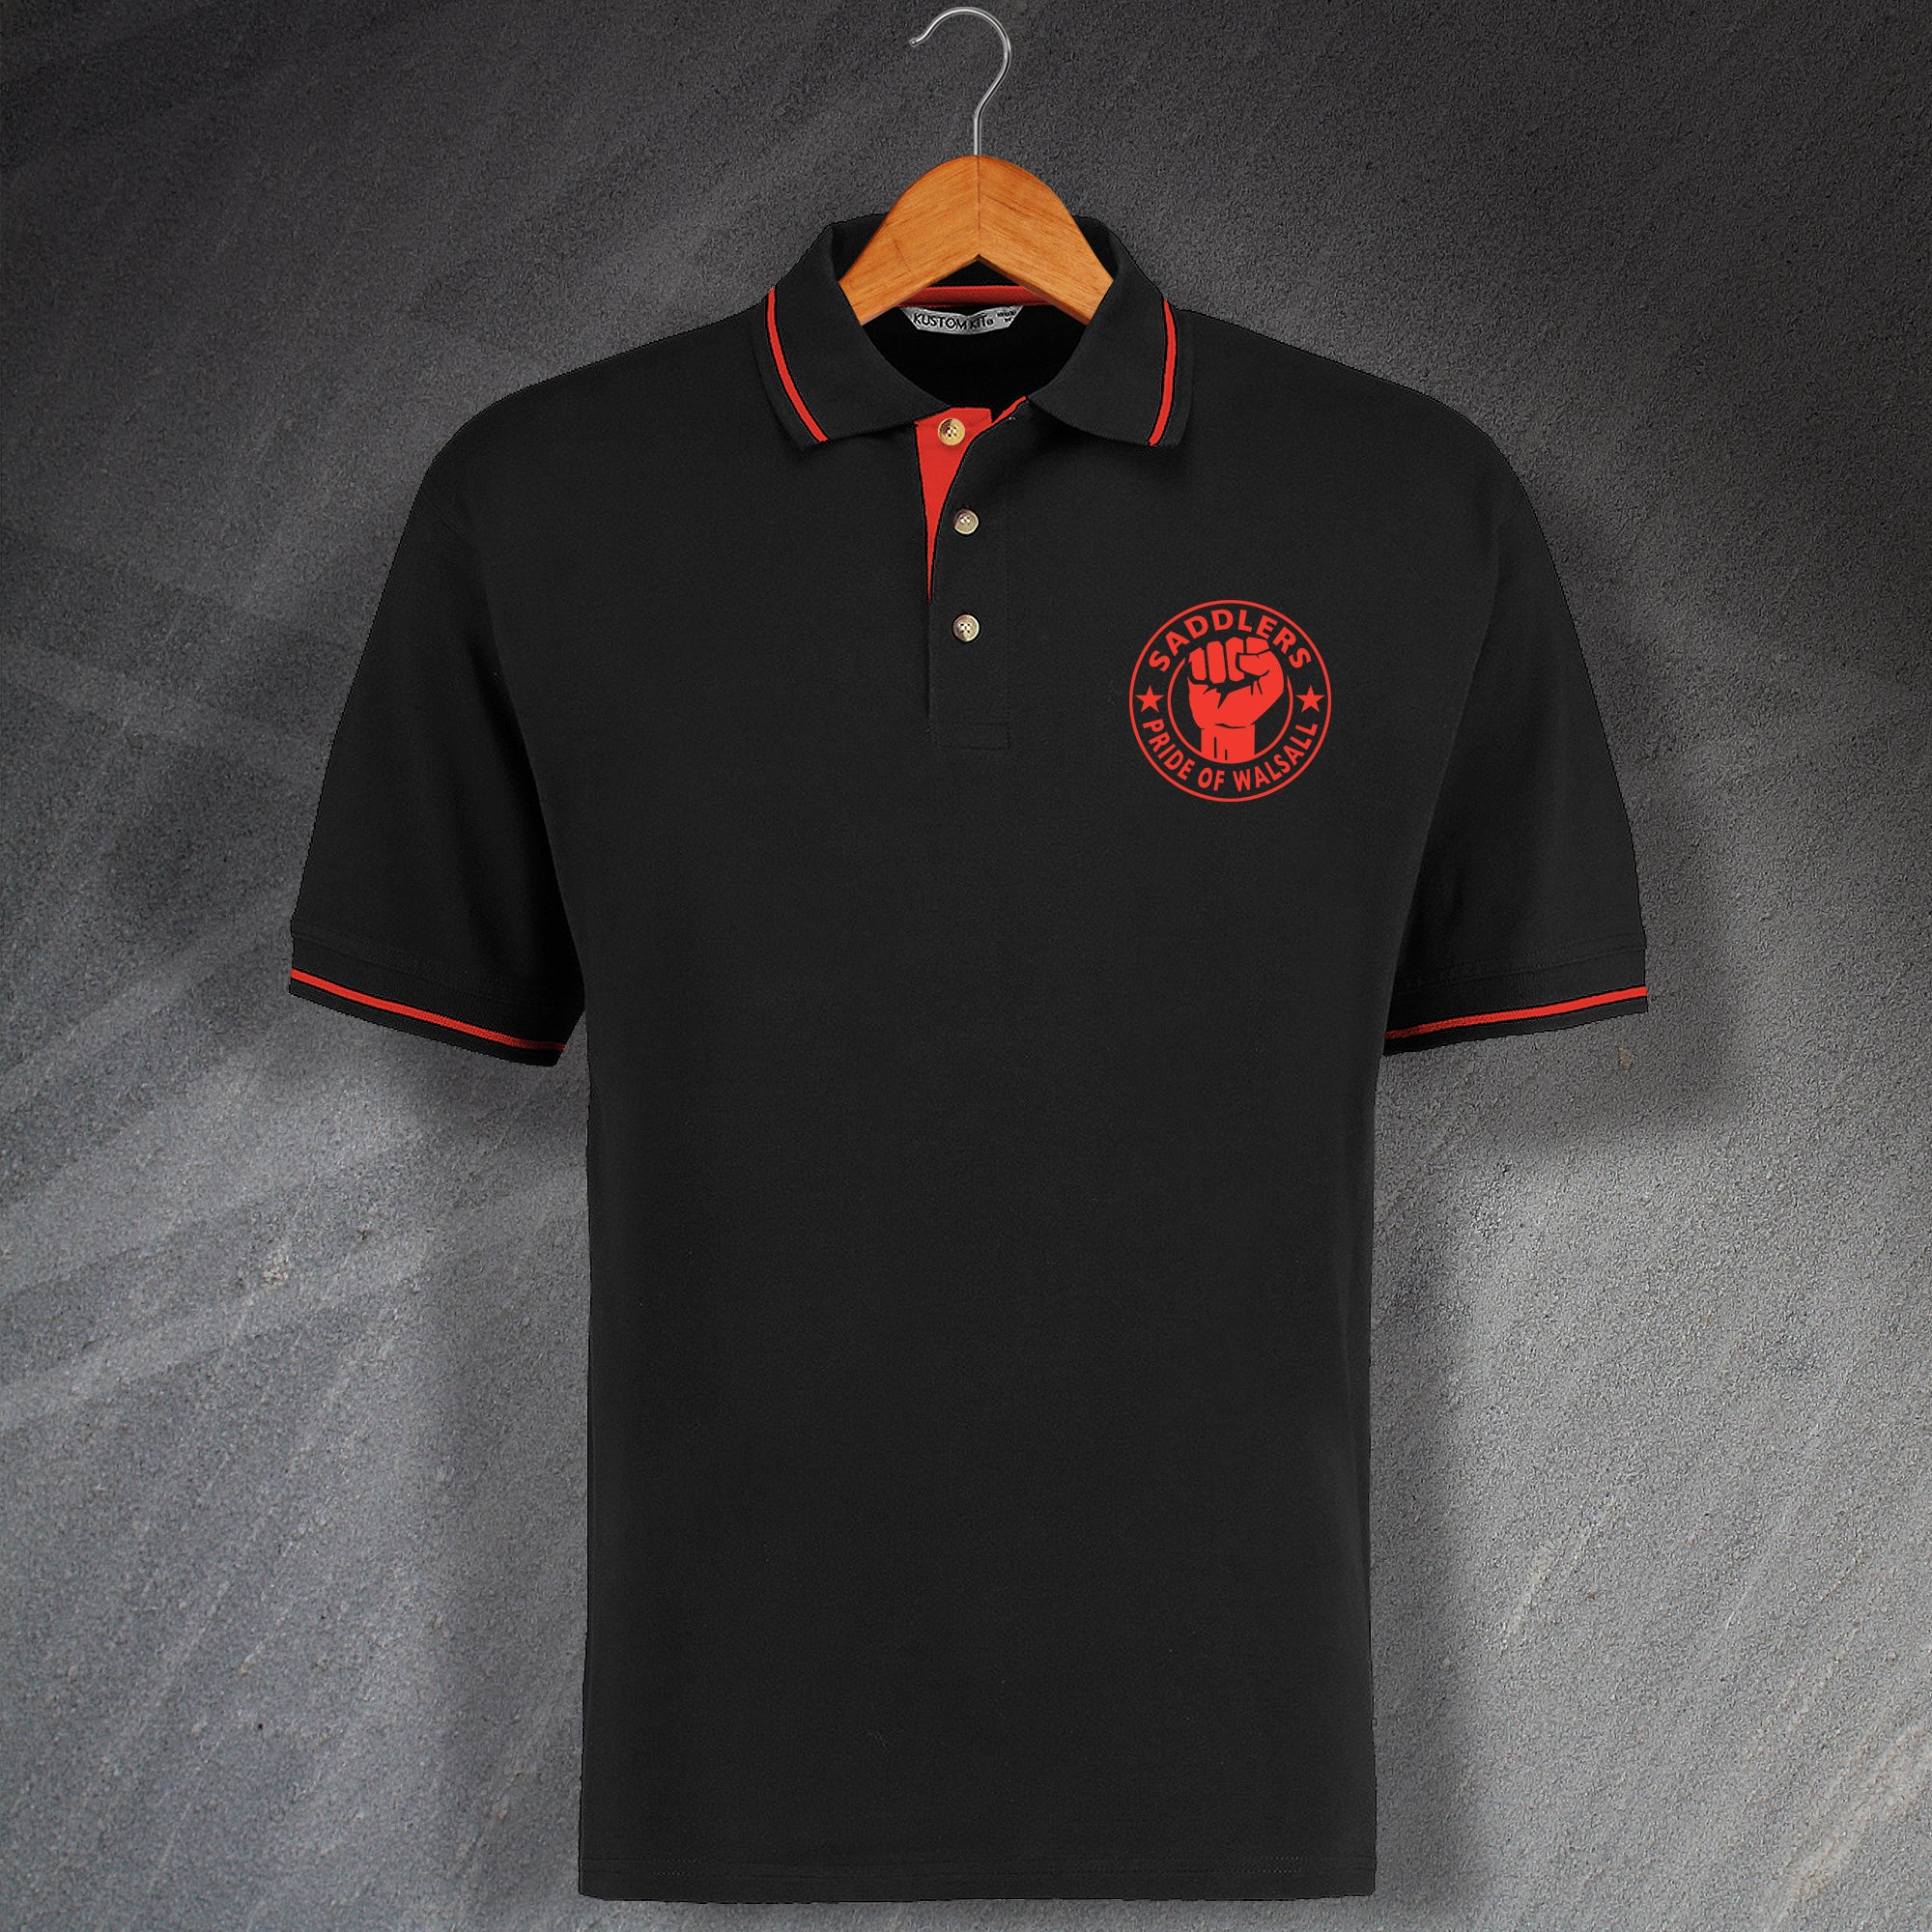 Saddlers Football Polo Shirt | Embroidered Walsall Football Tops ...